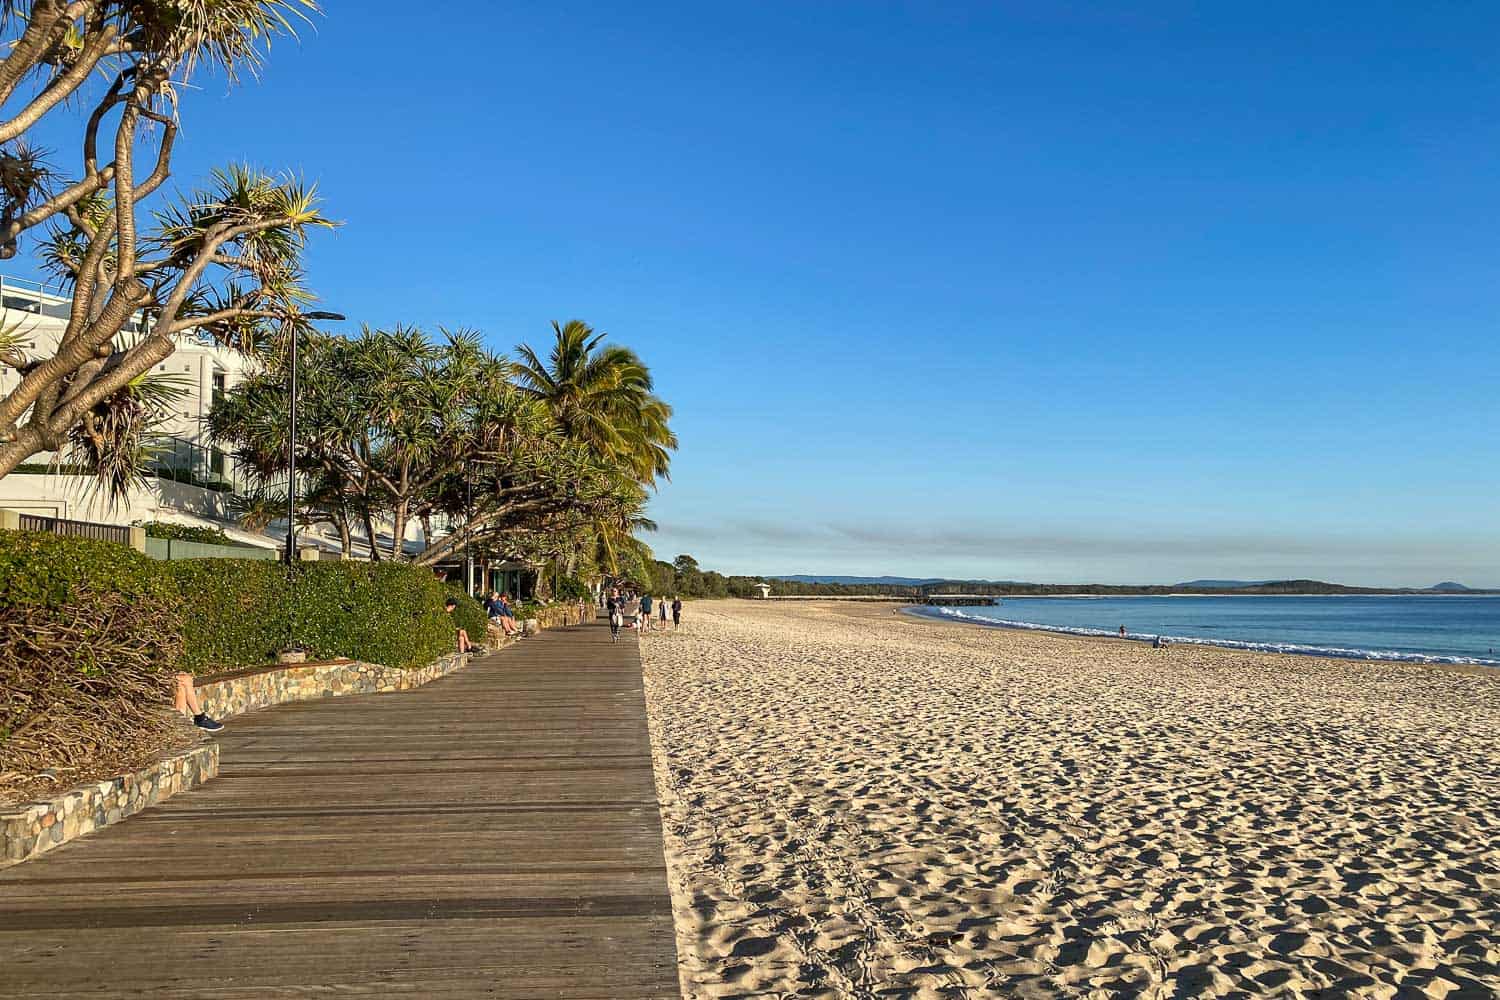 Main Beach boardwalk, Noosa, Queensland, Australia